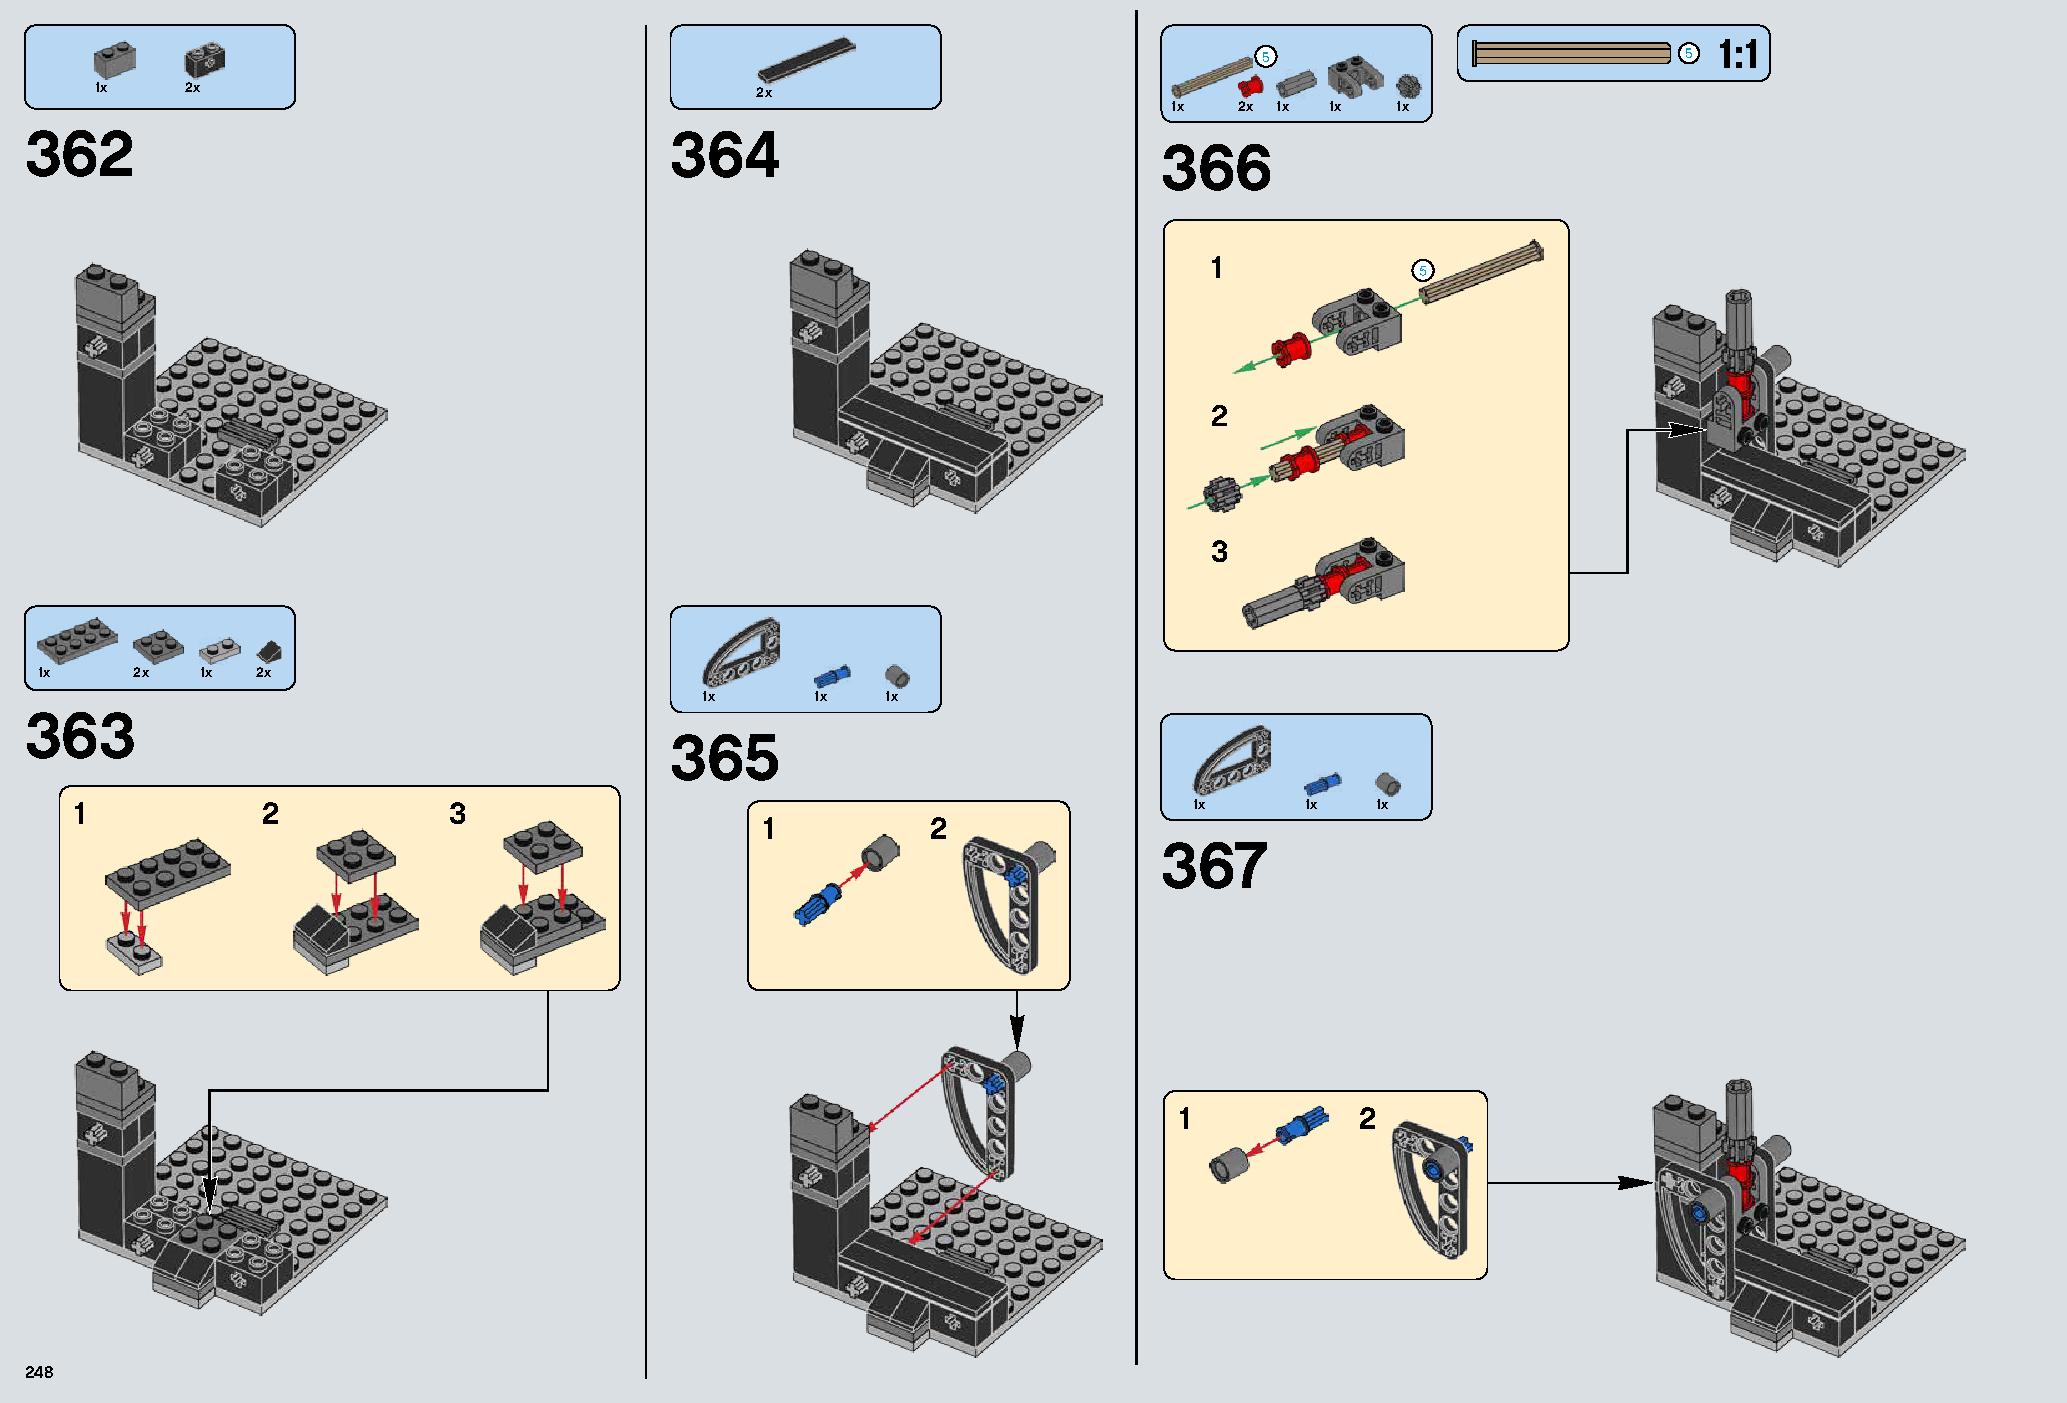 デス・スター 75159 レゴの商品情報 レゴの説明書・組立方法 248 page